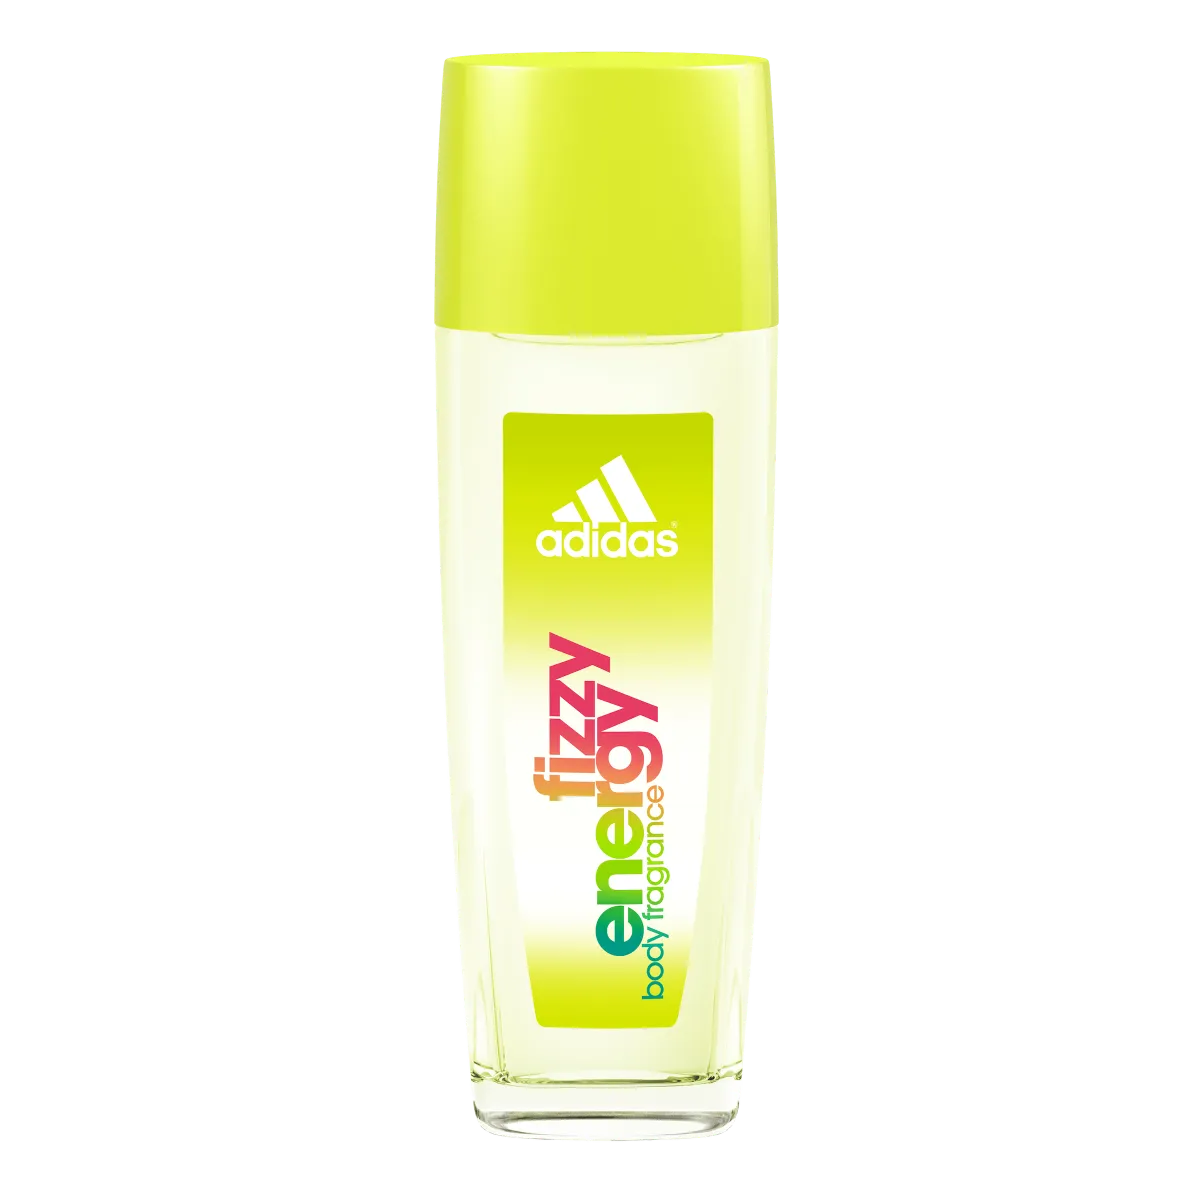 adidas Fizzy Energy Dezodorant dla kobiet, 75 ml